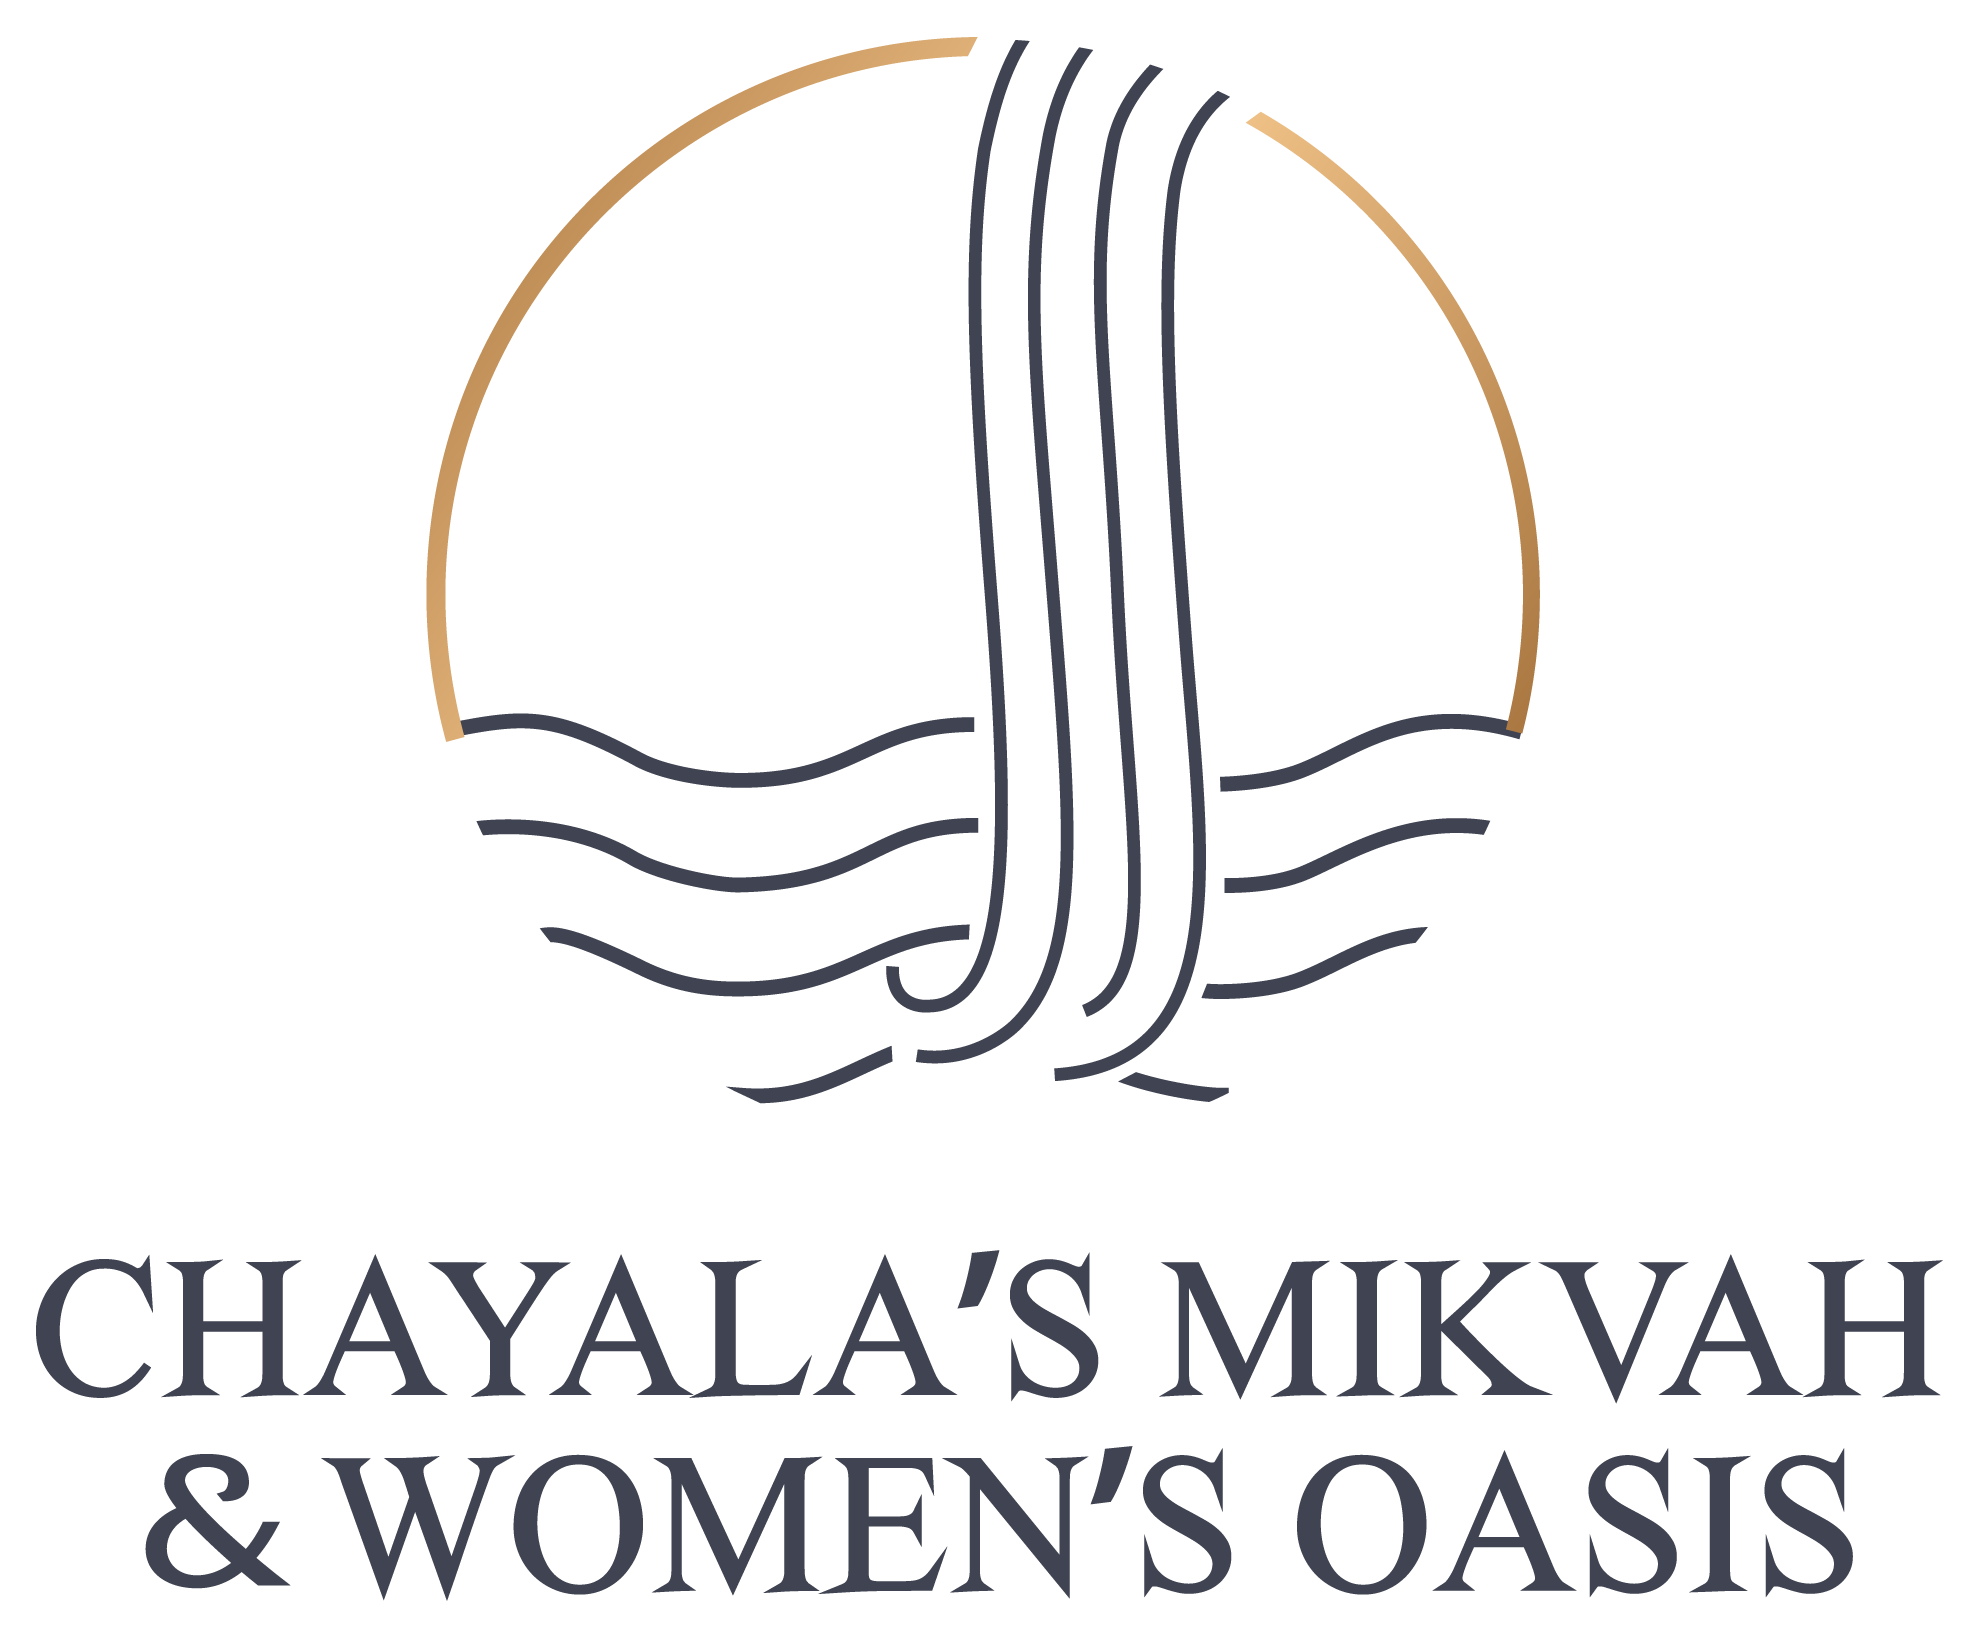 Chayala's Mikvah